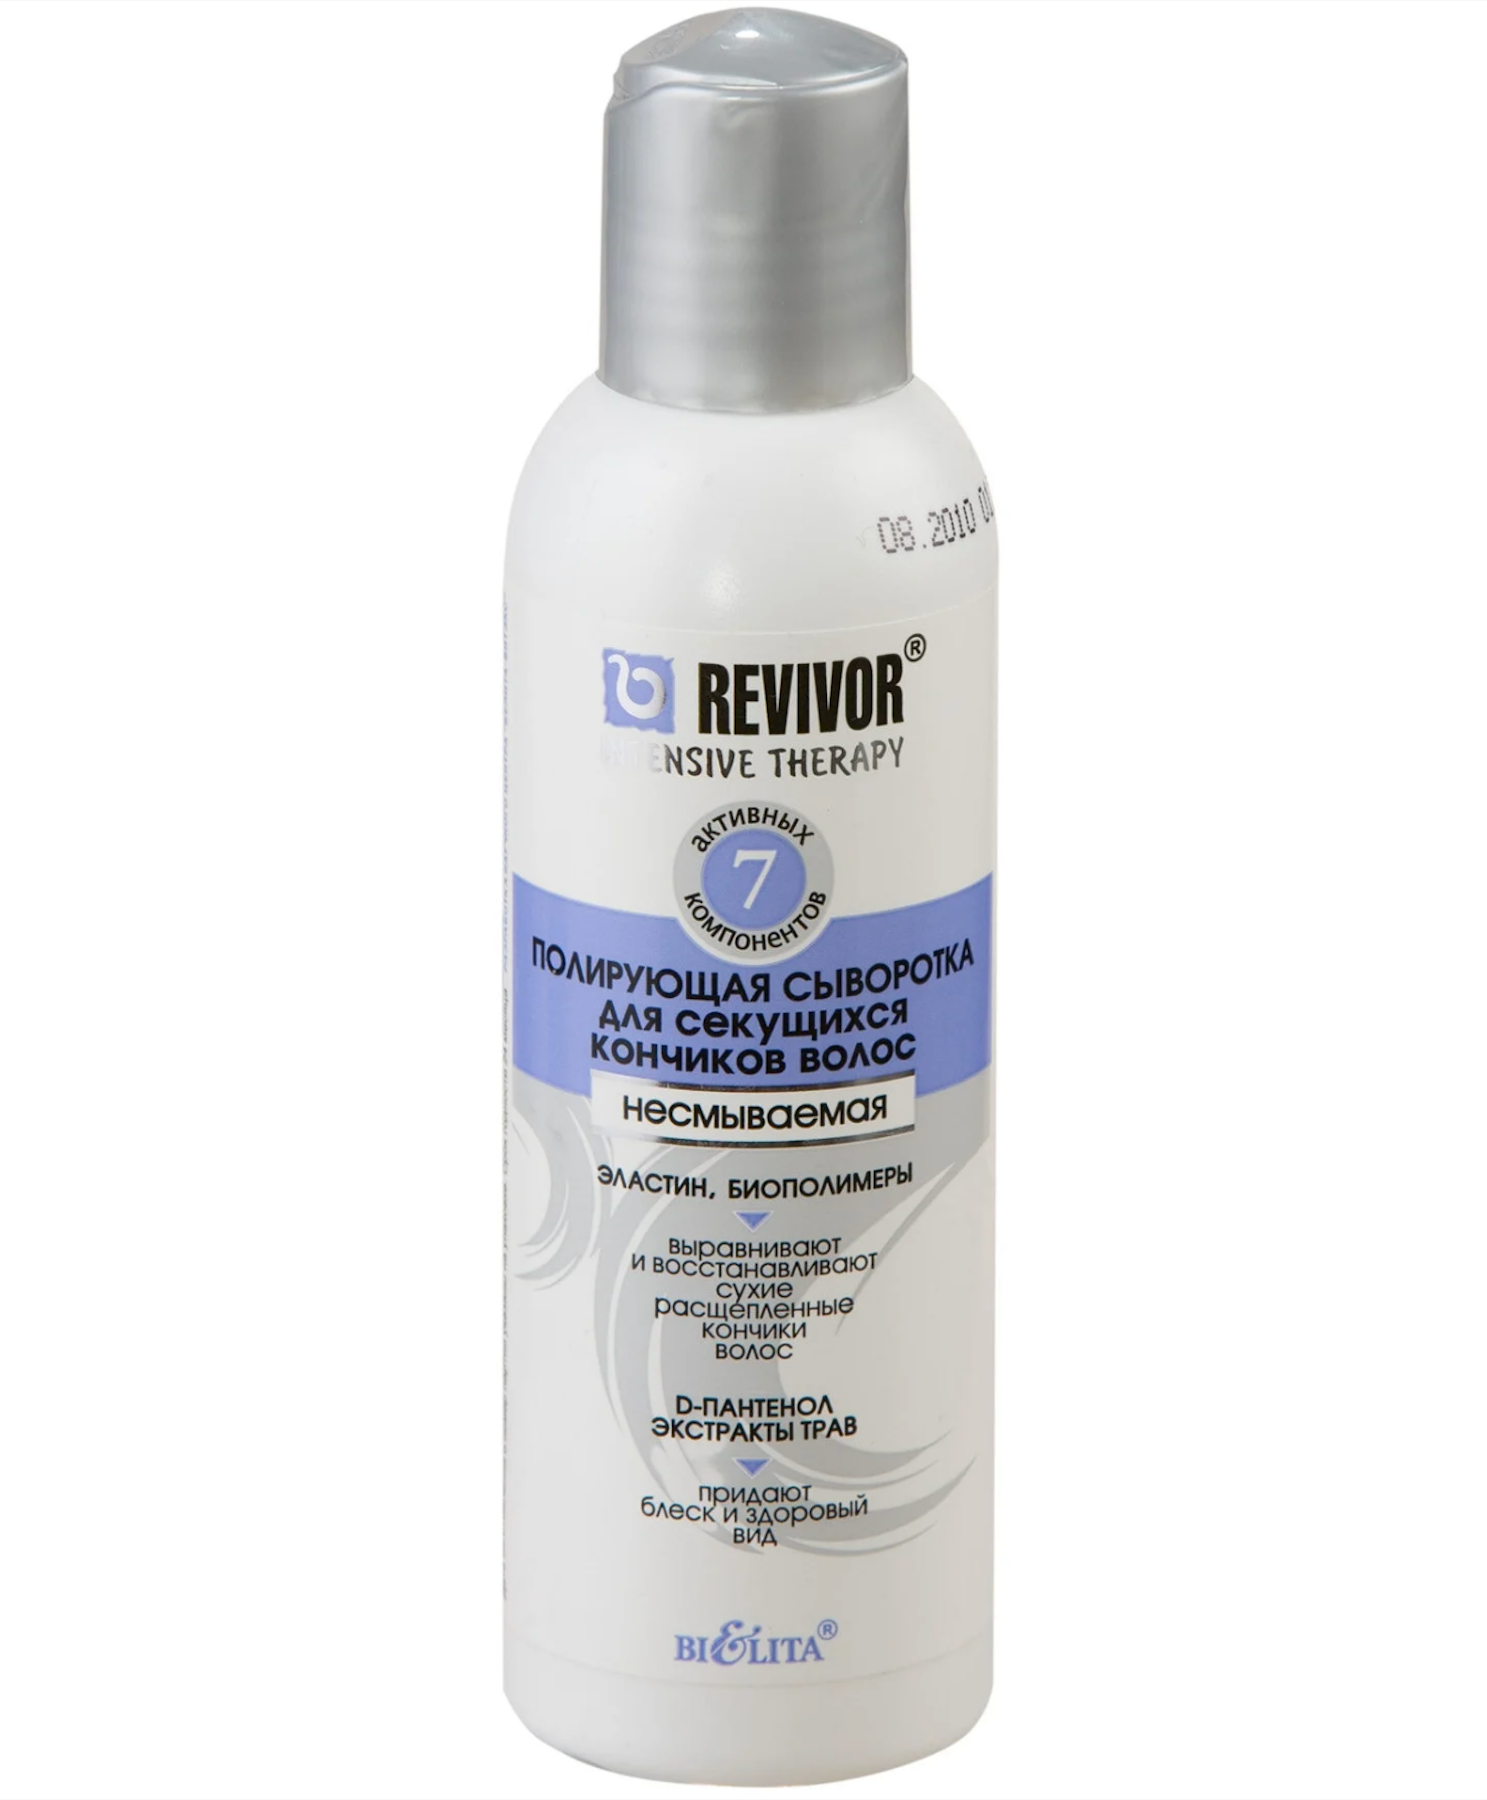 Ревайвор / Revivor Intensive Therapy - Сыворотка для секущихся кончиков волос несмываемая 150 мл